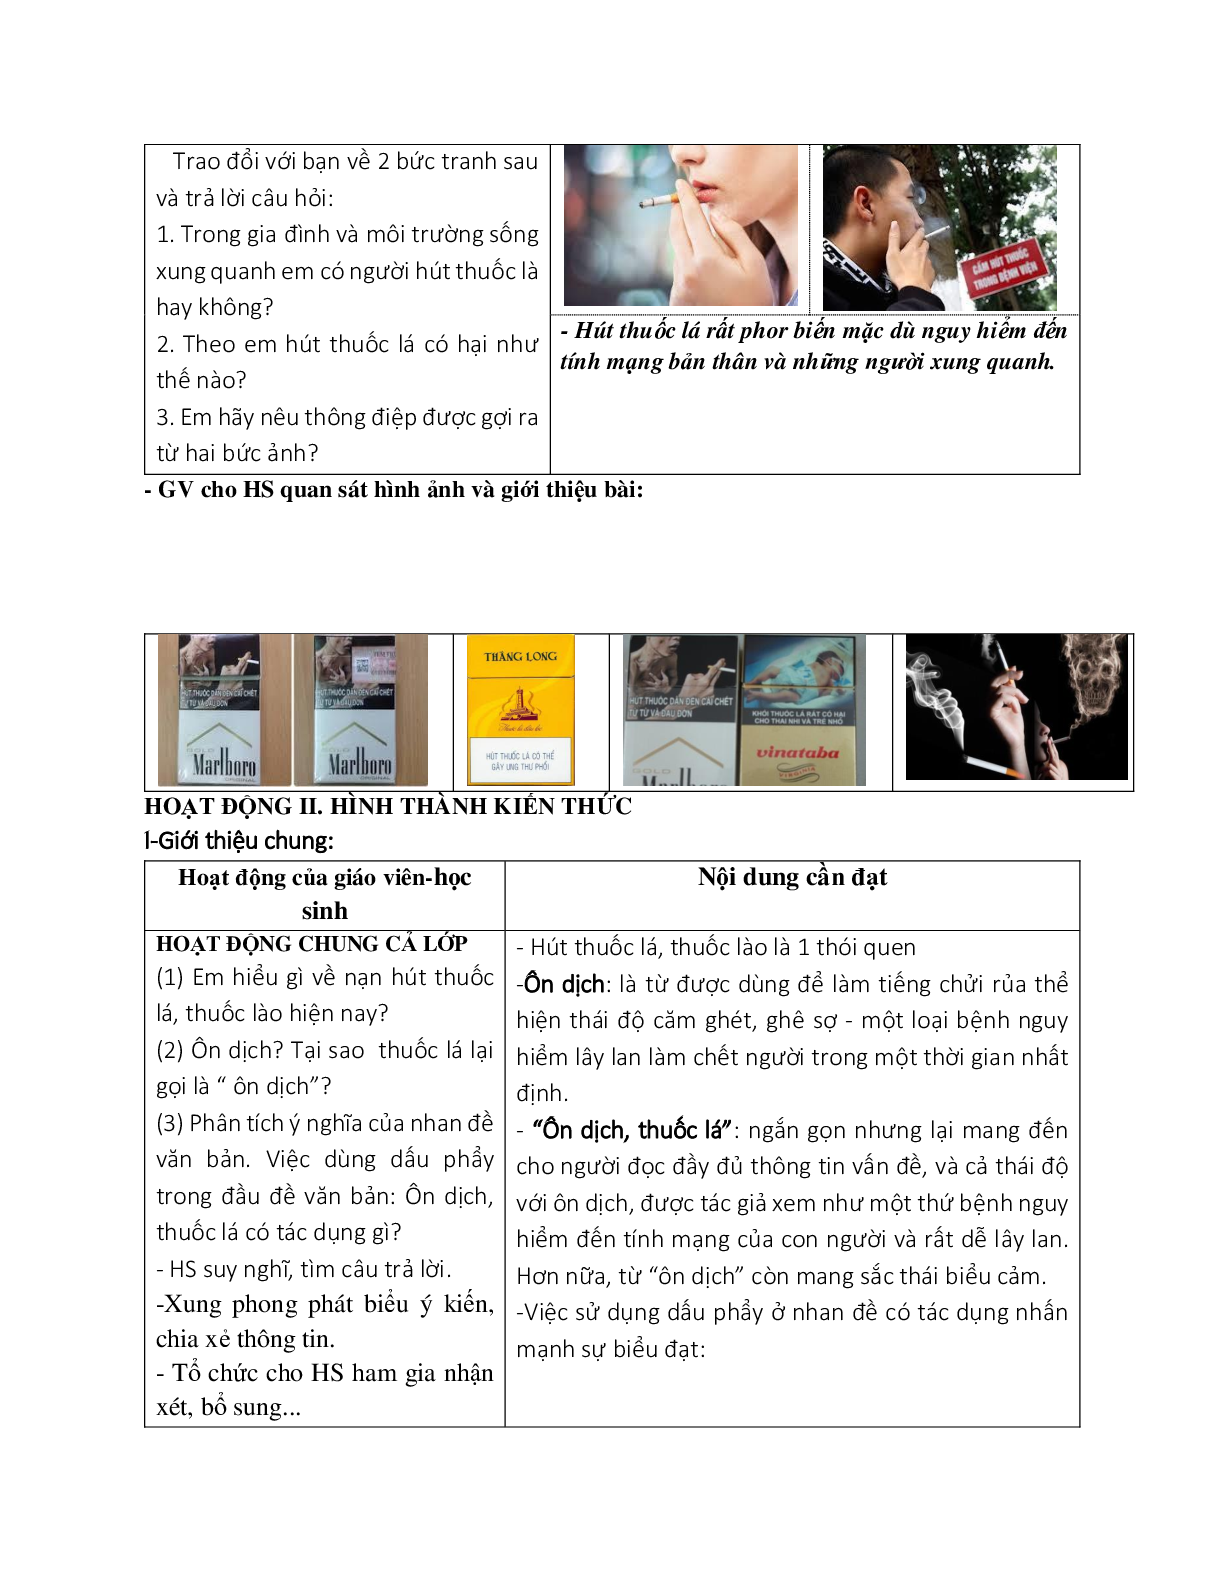 Giáo án ngữ văn lớp 8 Tuần 12 Tiết 45: Ôn dịch thuốc lá mới nhất (trang 2)